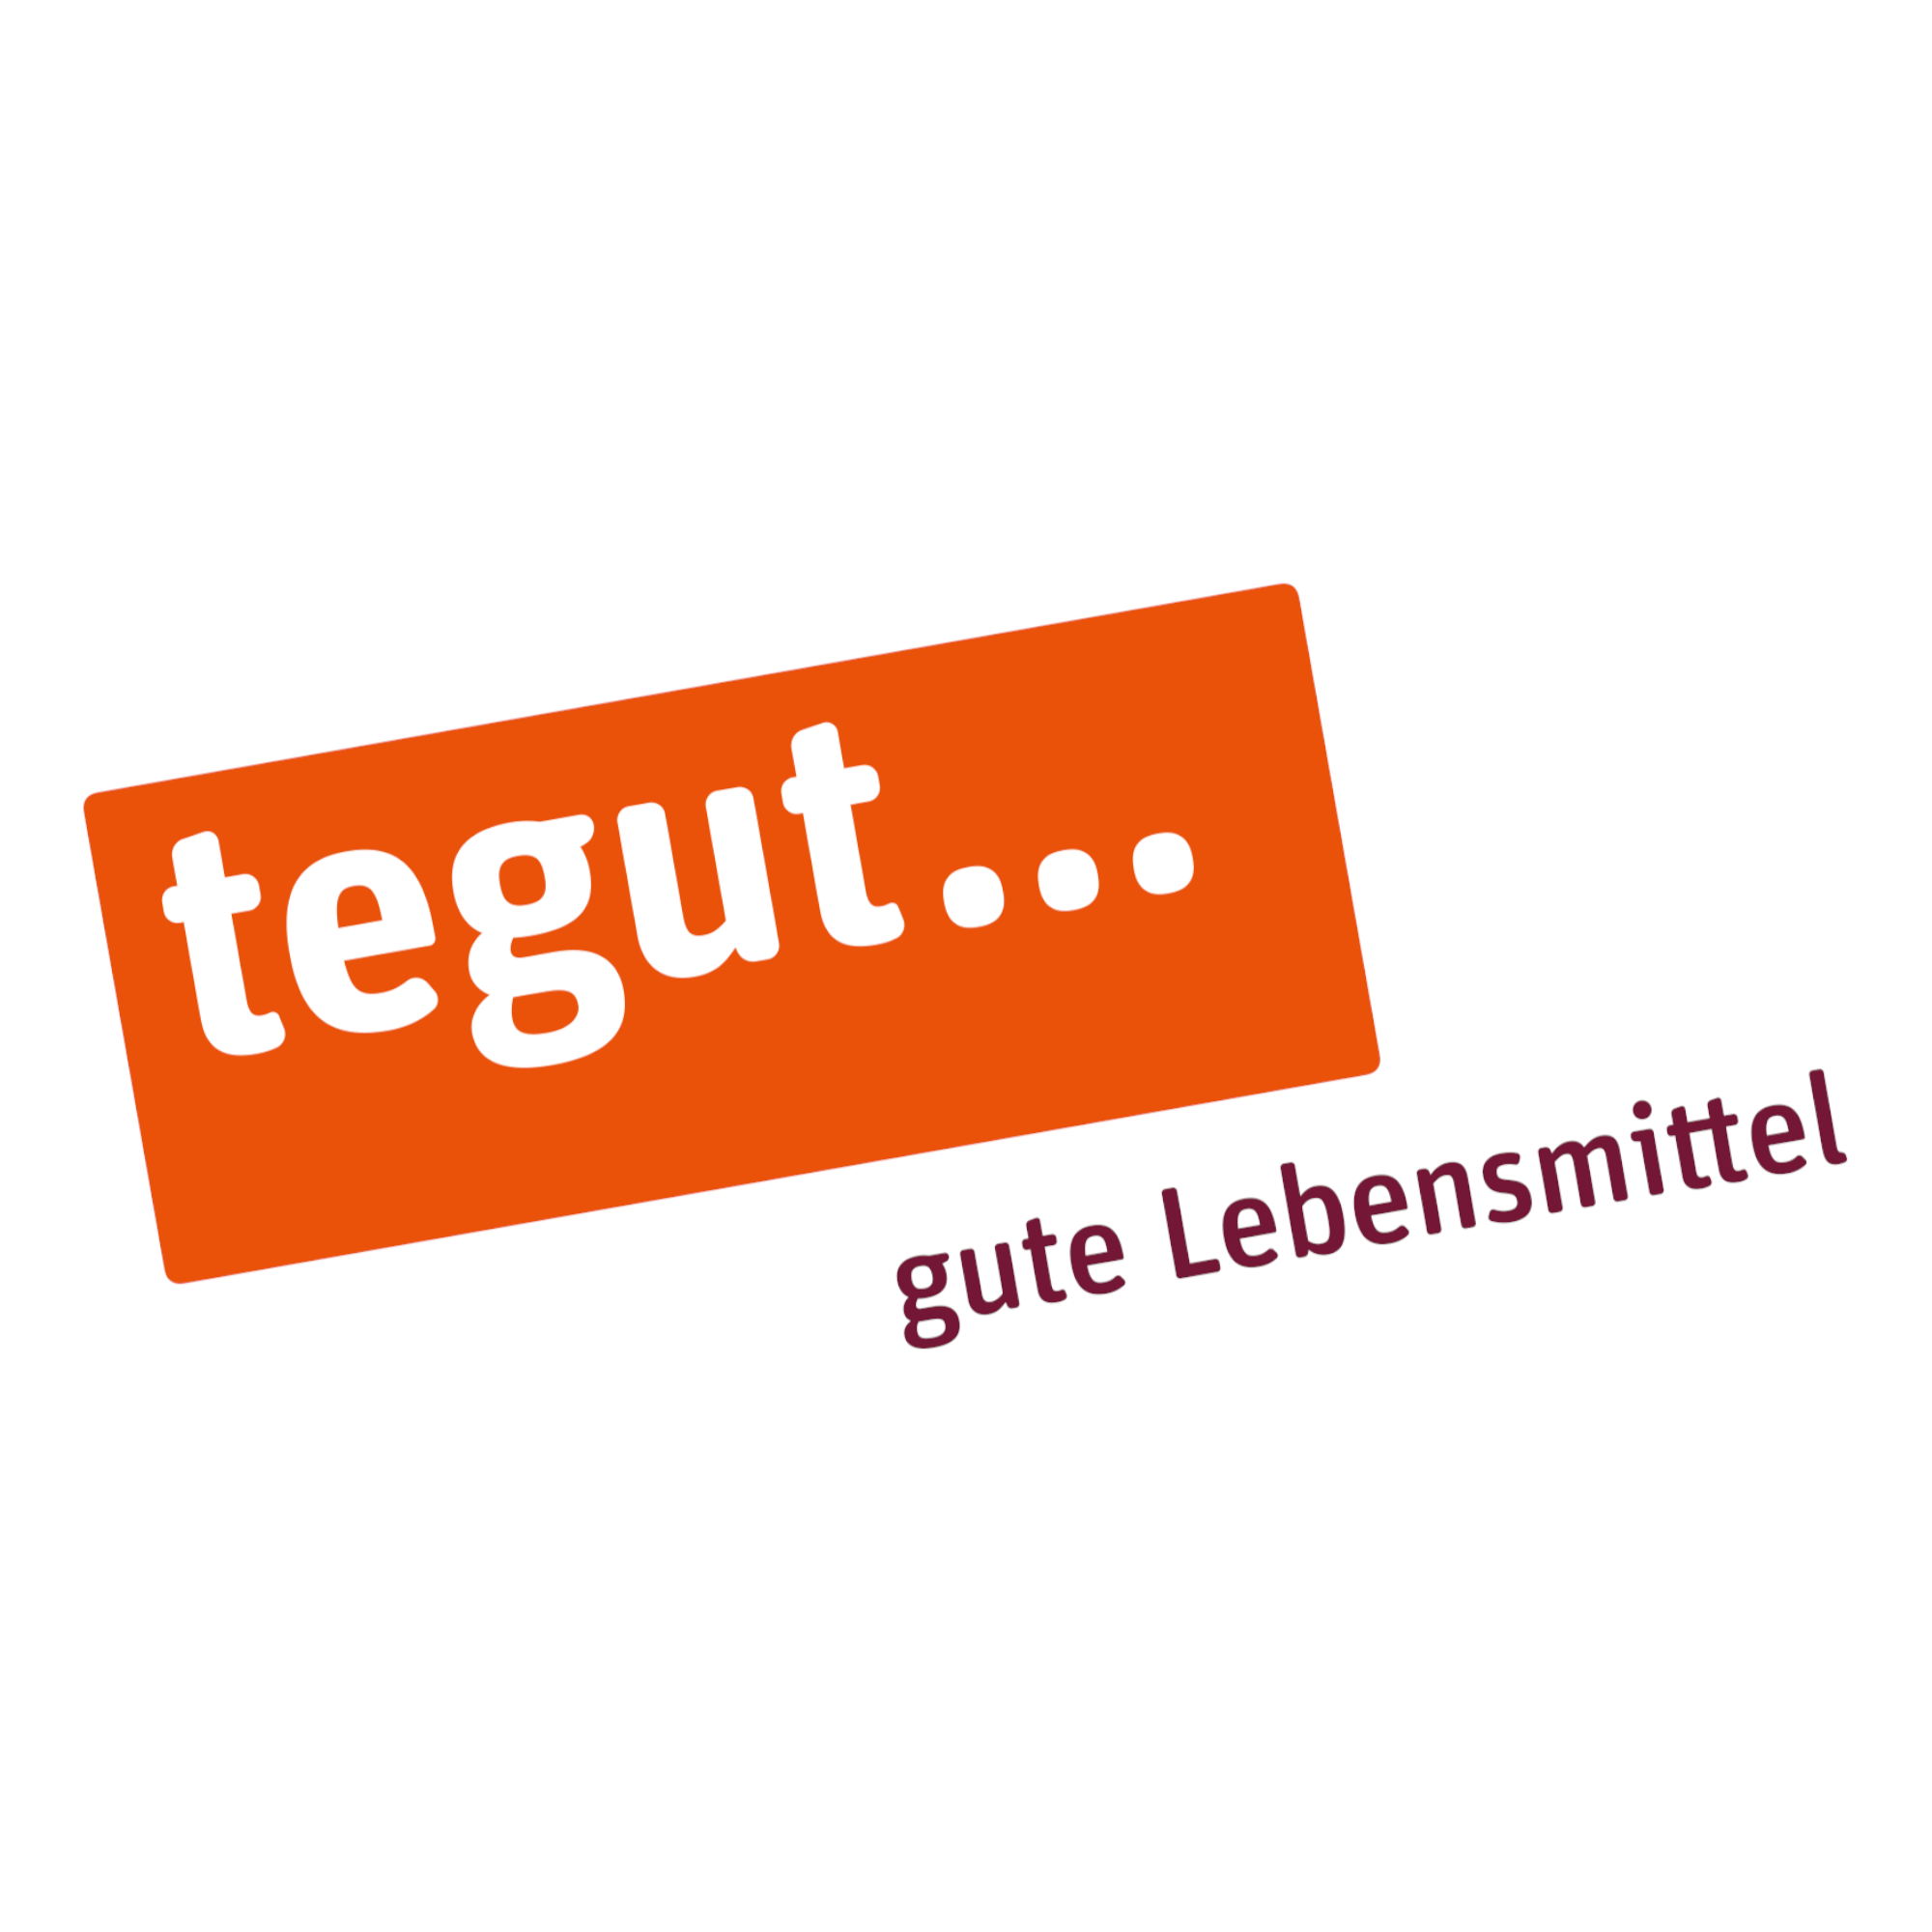 tegut... gute Lebensmittel in Niedernhausen im Taunus - Logo